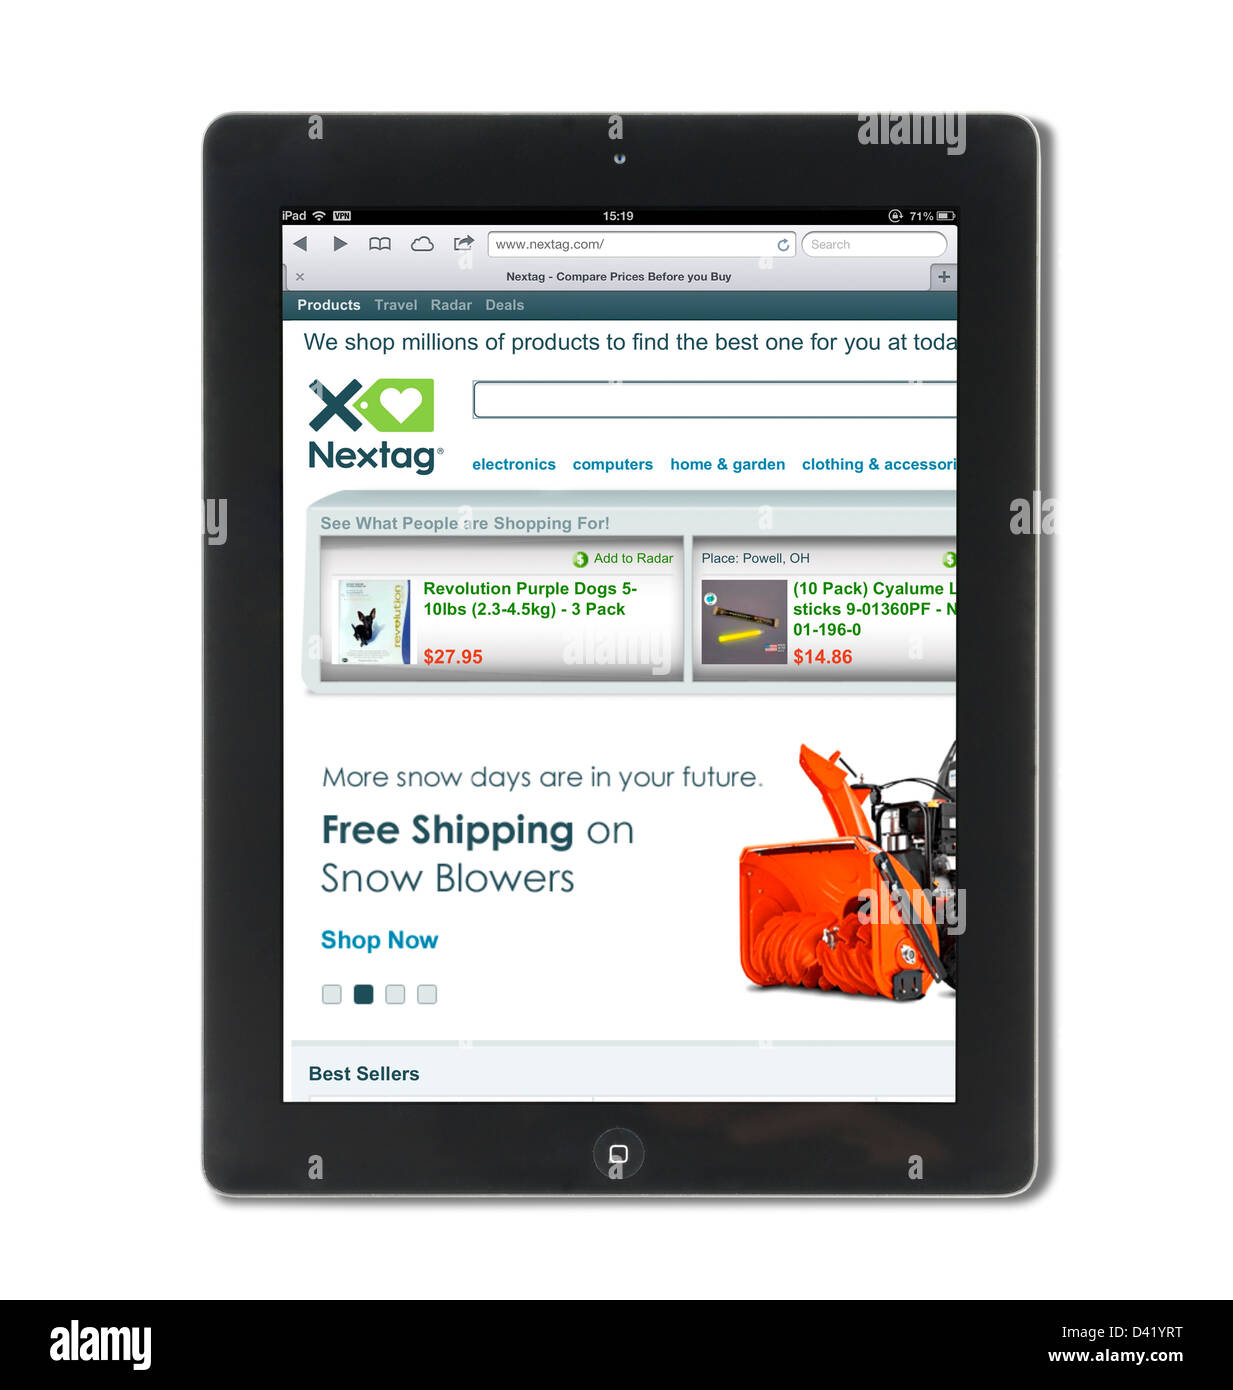 Le site de comparaison de prix NexTag vue sur un iPad 4, USA Banque D'Images